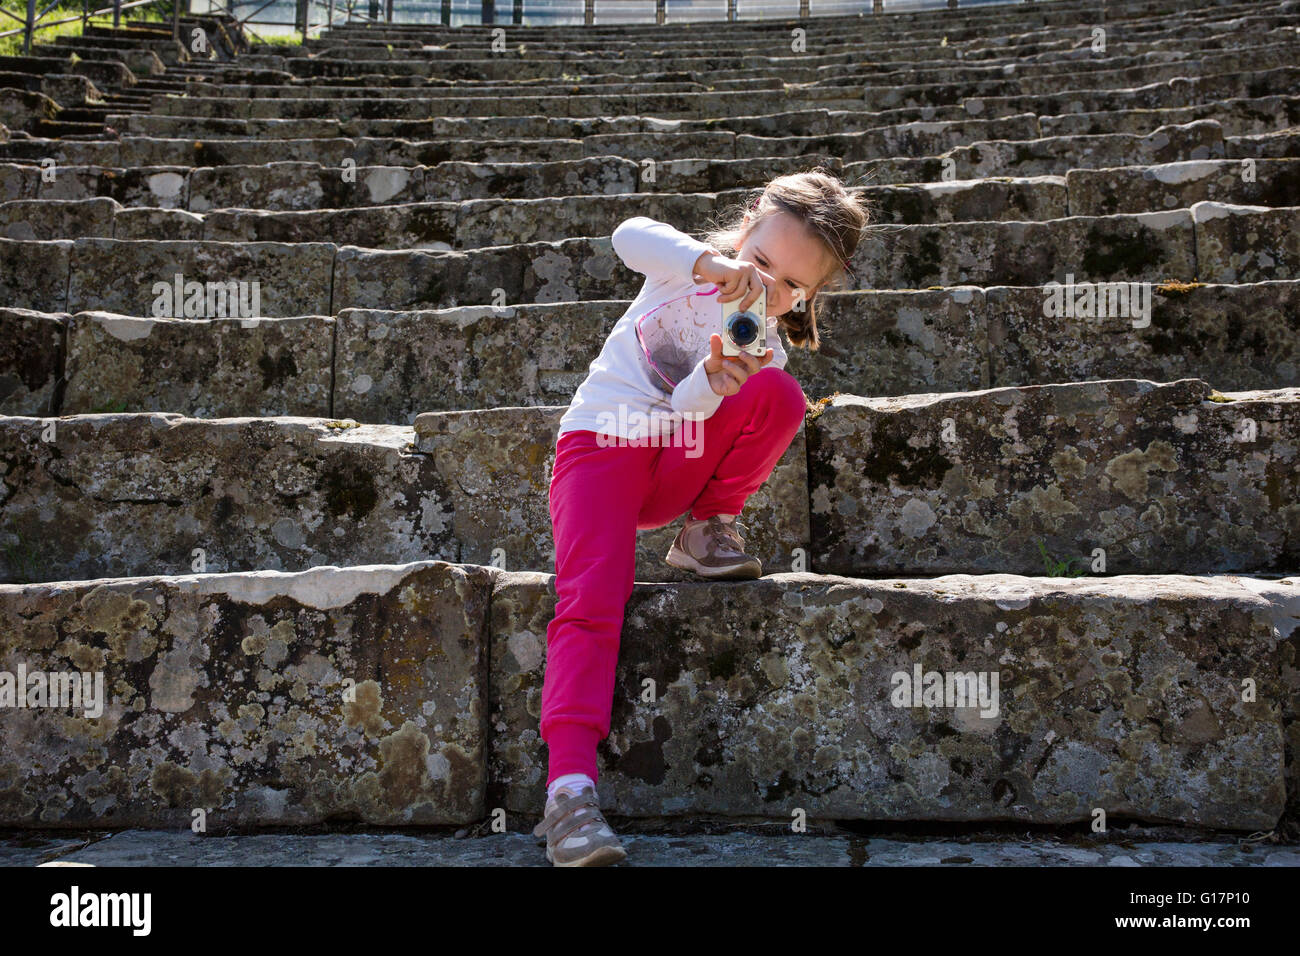 Ragazza di fotografare una scalinata di pietra a ruderi, Firenze, Italia Foto Stock